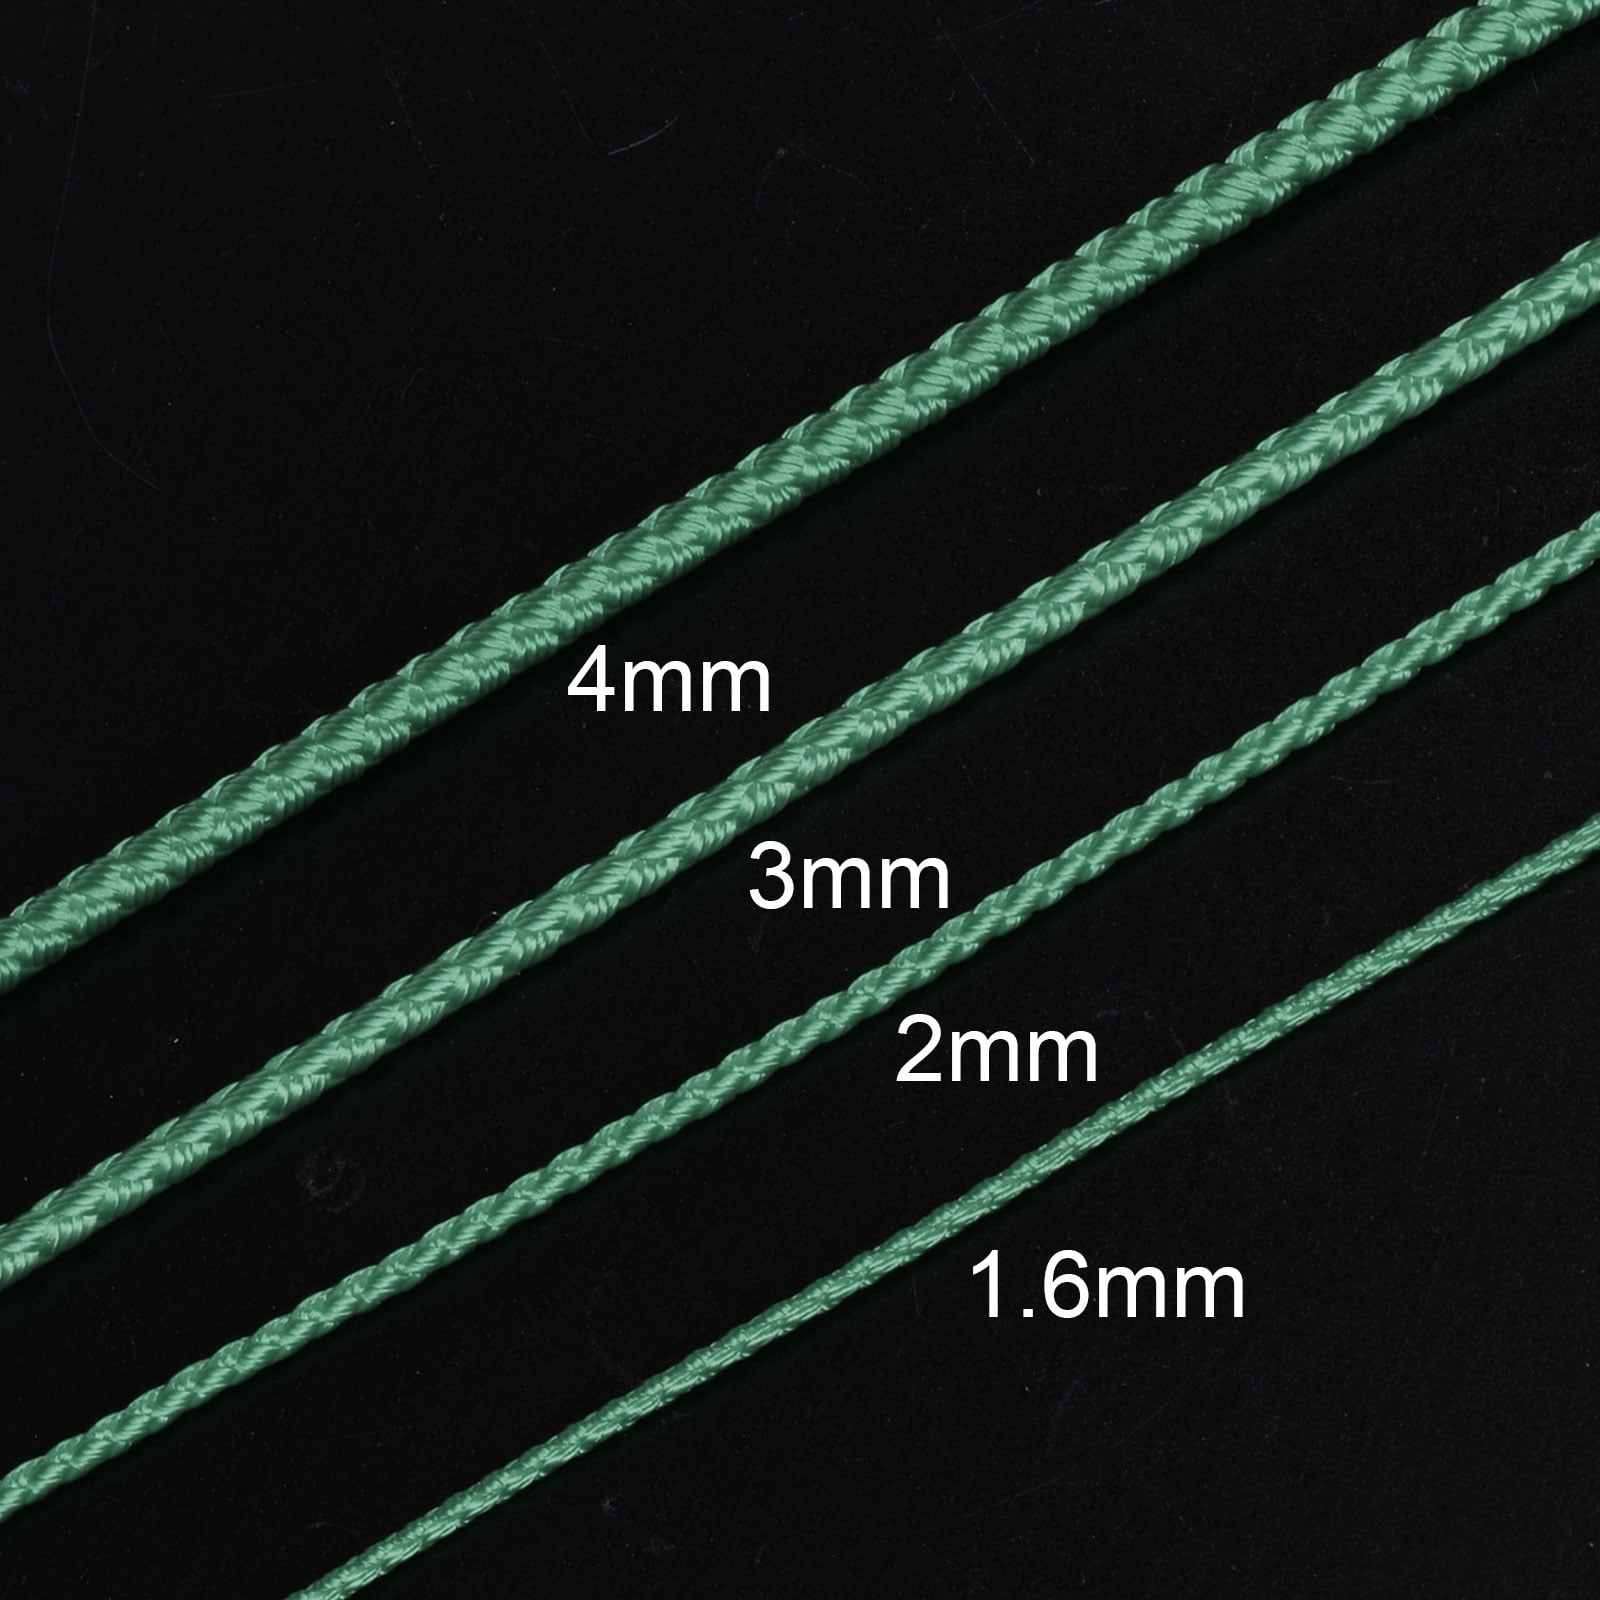 Bundle Of 2 Colors: Fireline Beading Thread, 50 Yards/Spool, 8LB Test,  0.007 Inch - 50YD Clear 50YD 